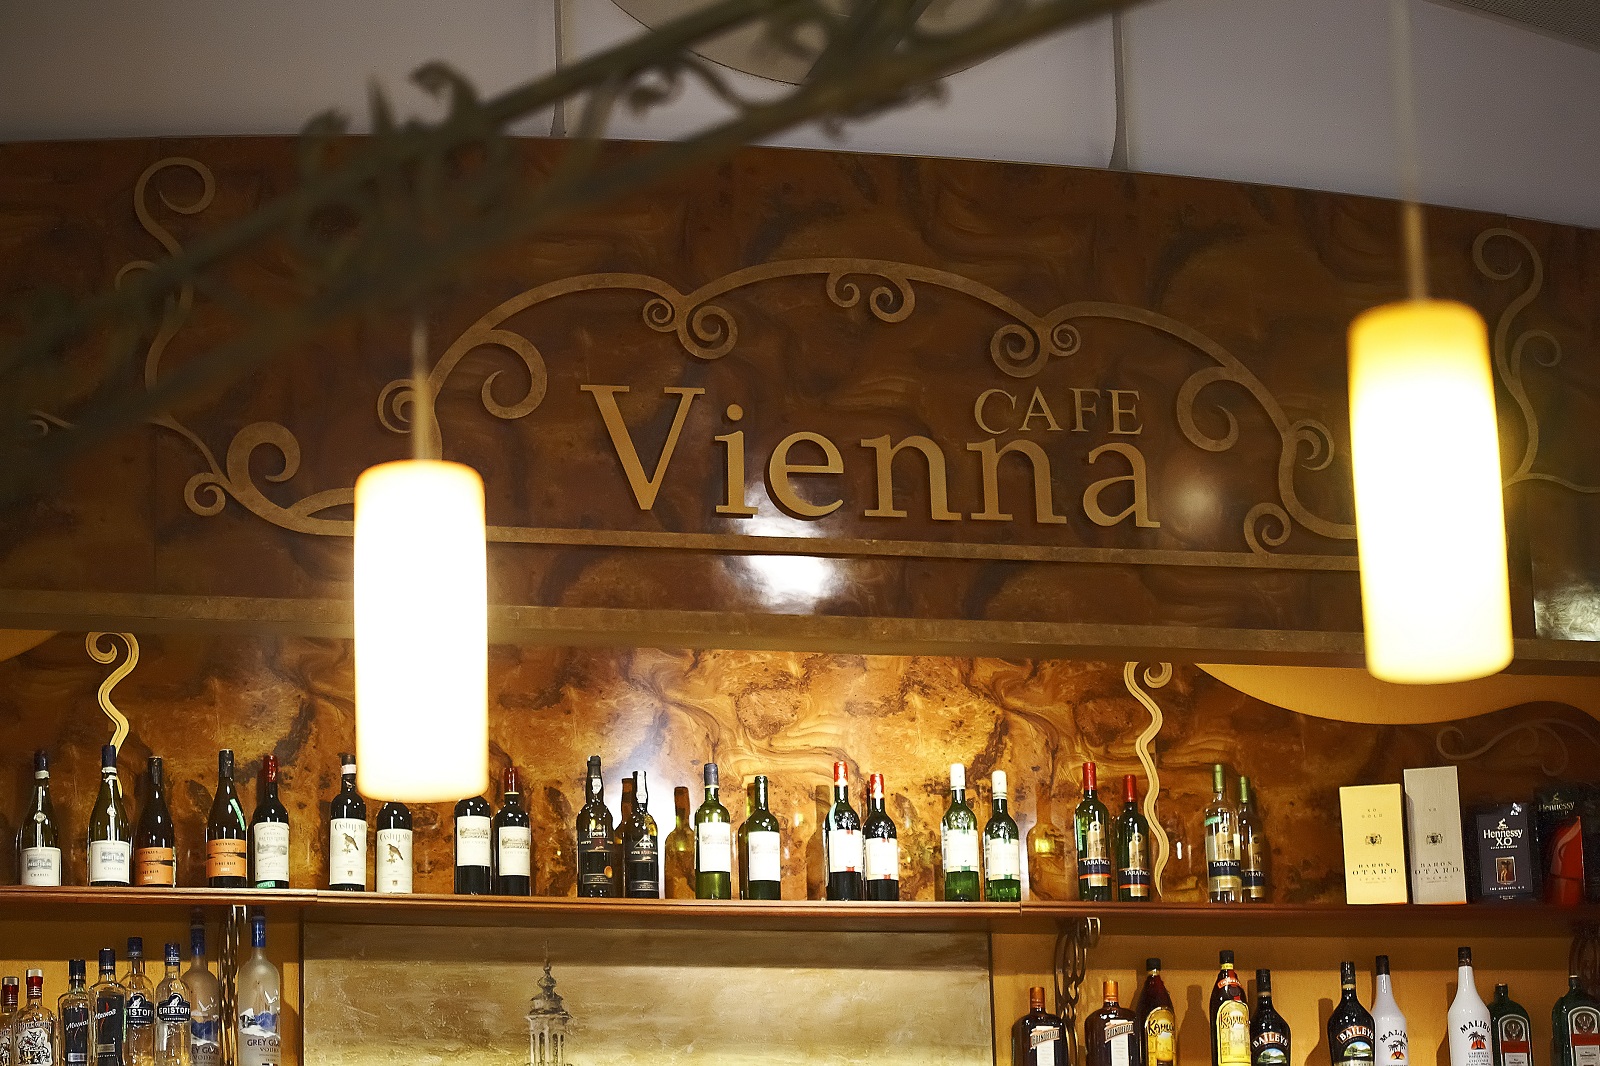  Vienna cafe